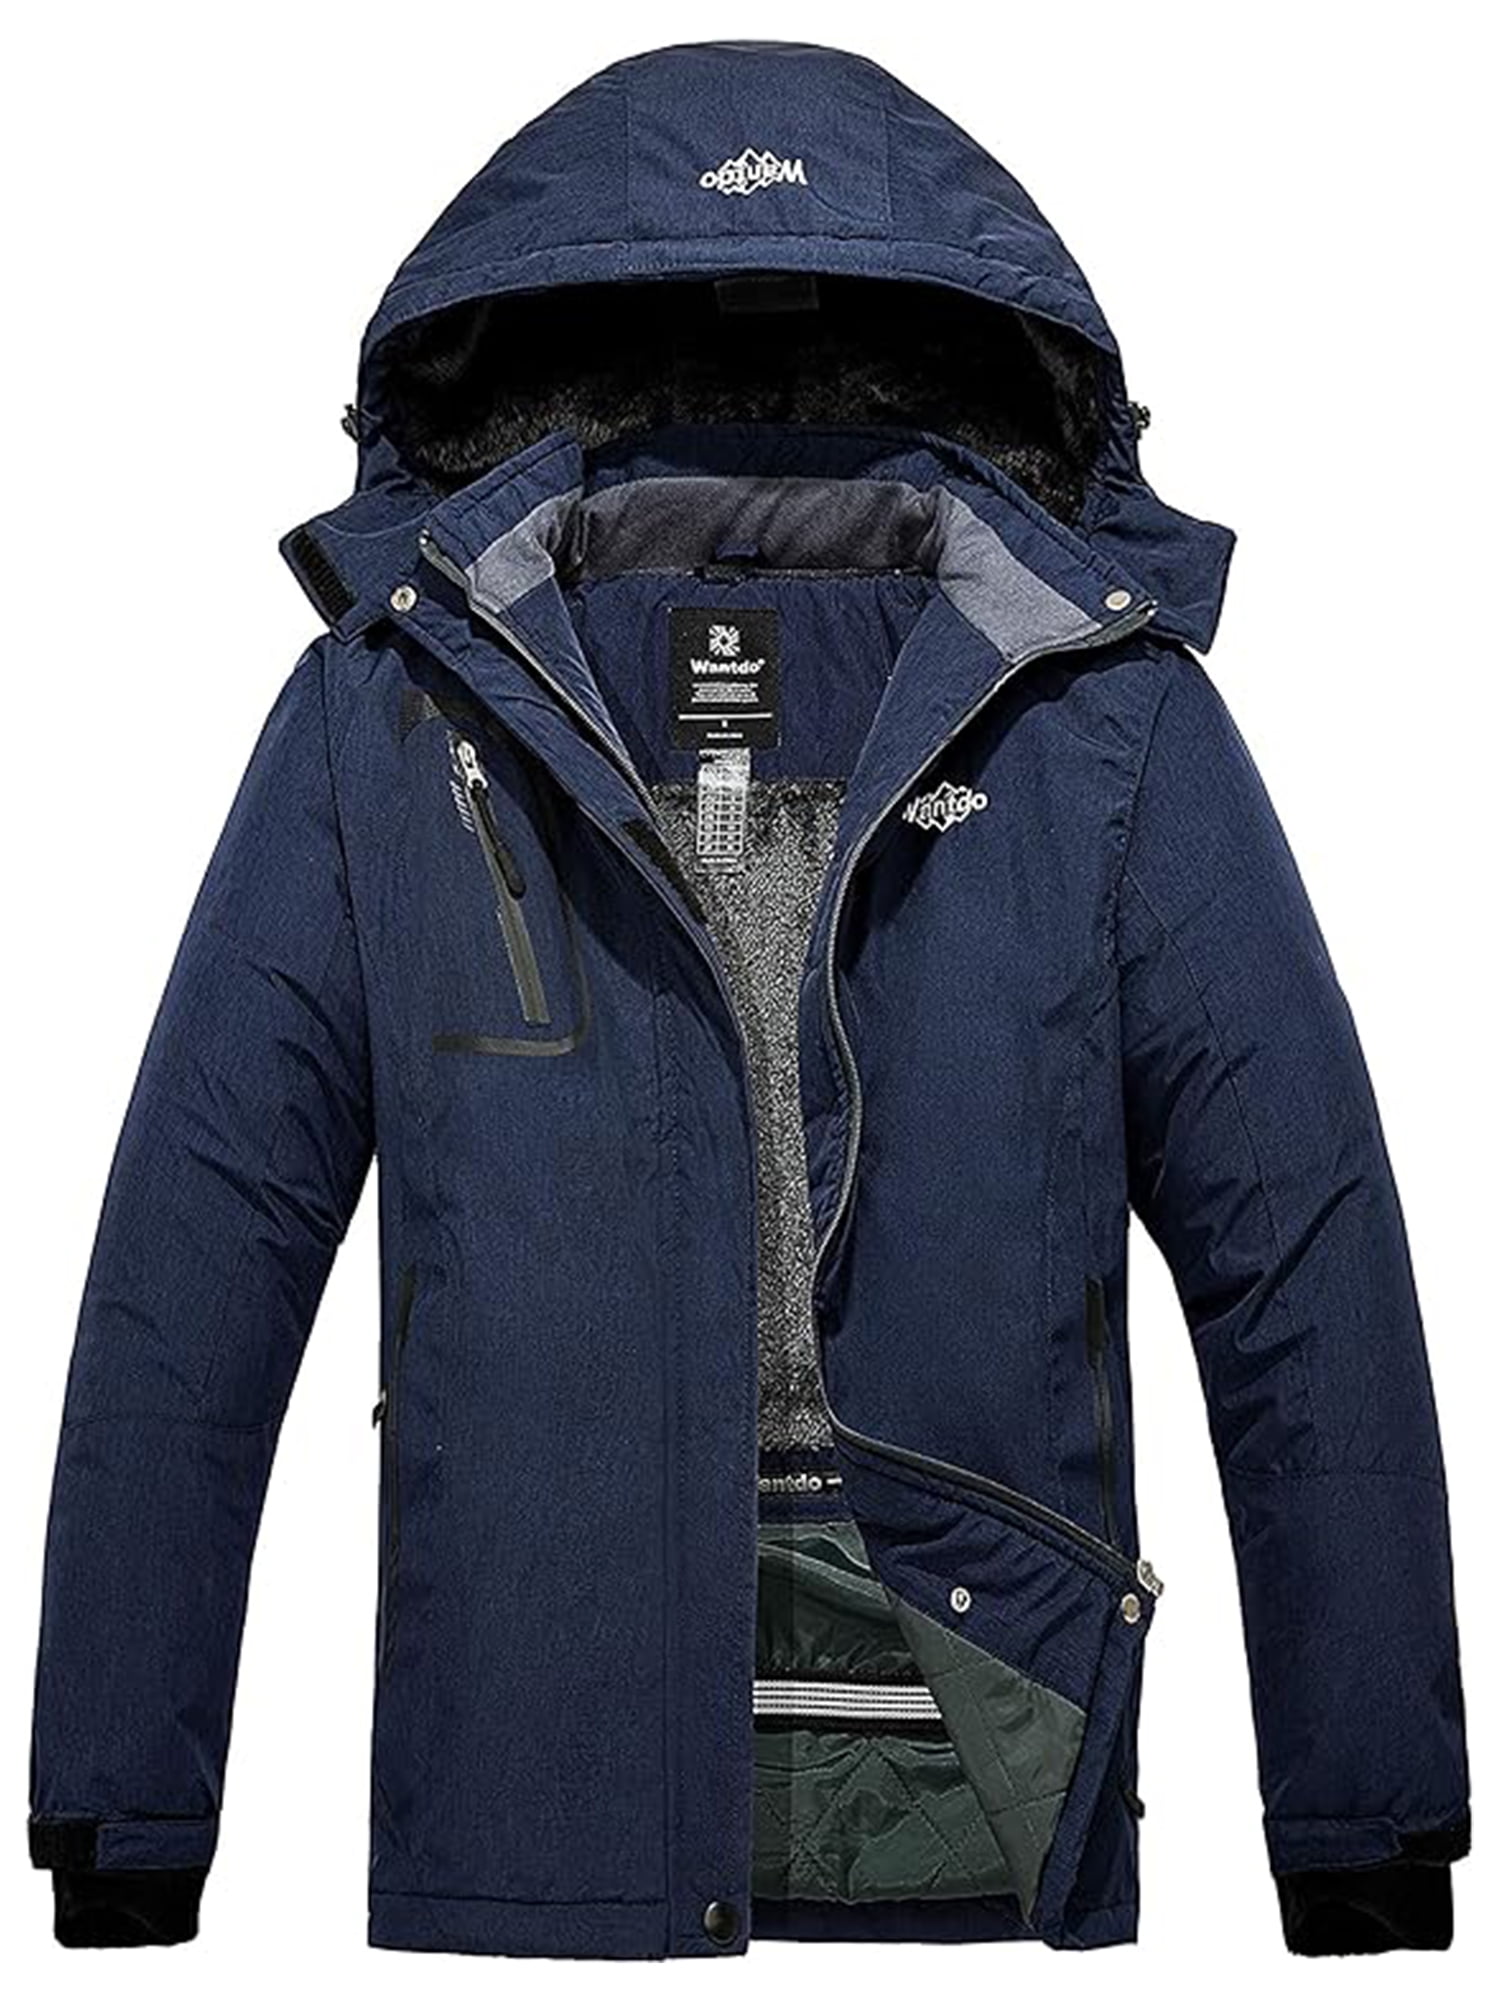 Wantdo Women's Waterproof Mountain Jacket Fleece Ski Jacket US S Blue Small